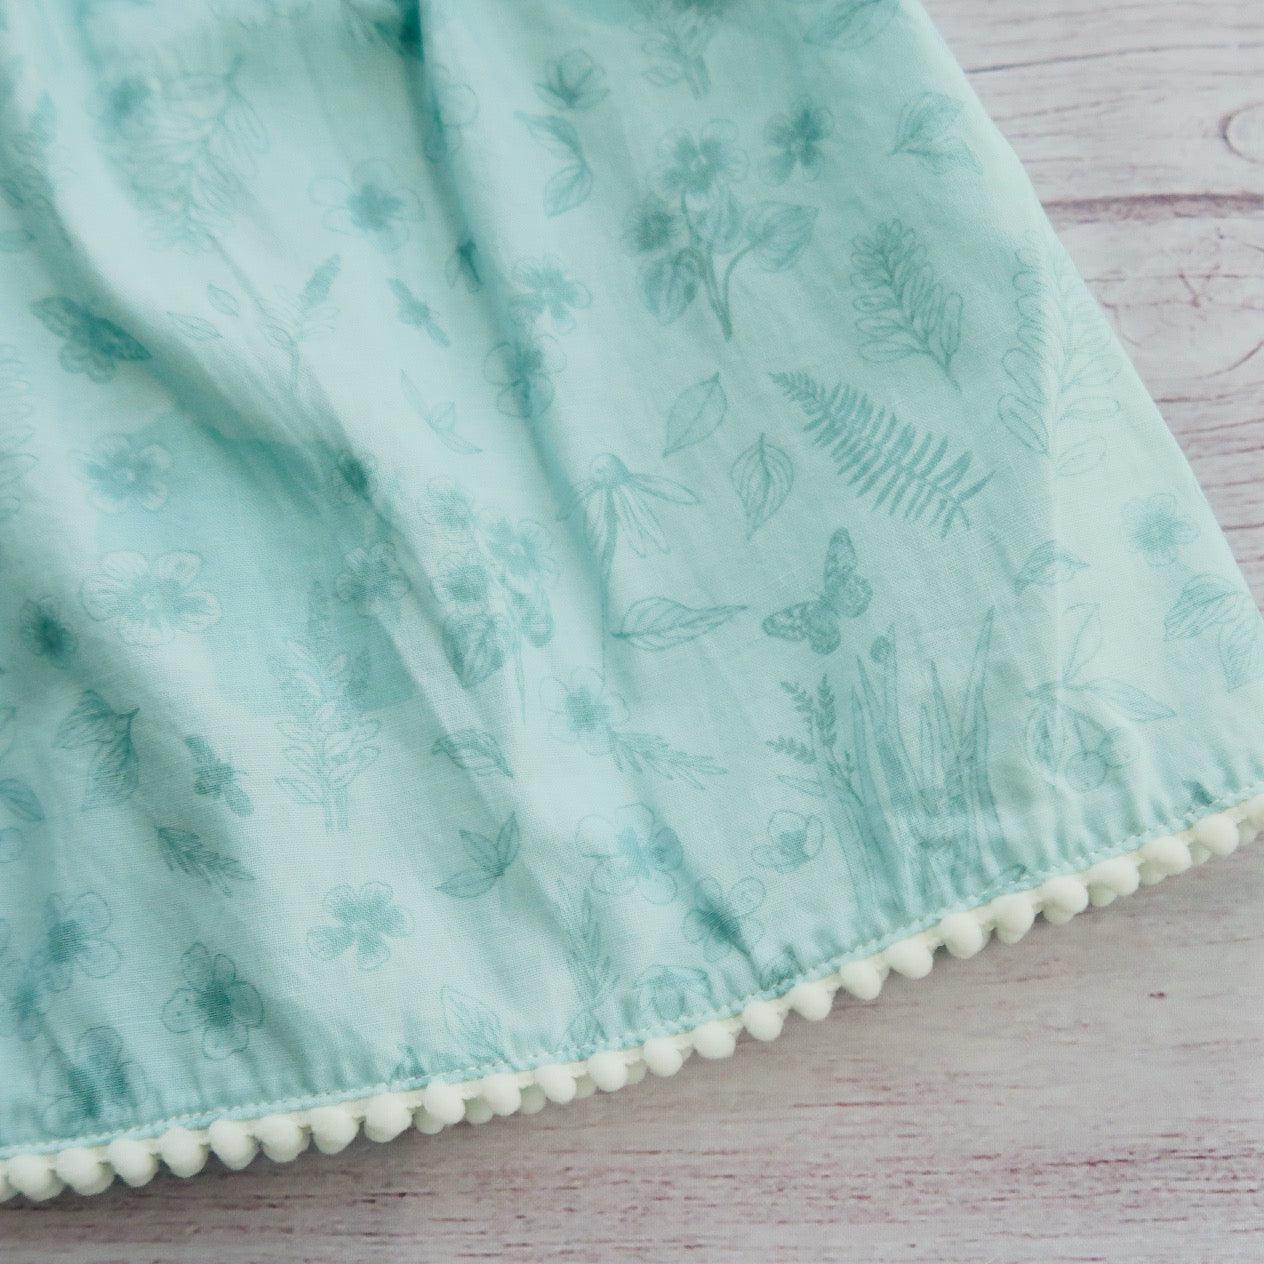 Periwinkle Dress in Green Flowers Print - Lil' Tati